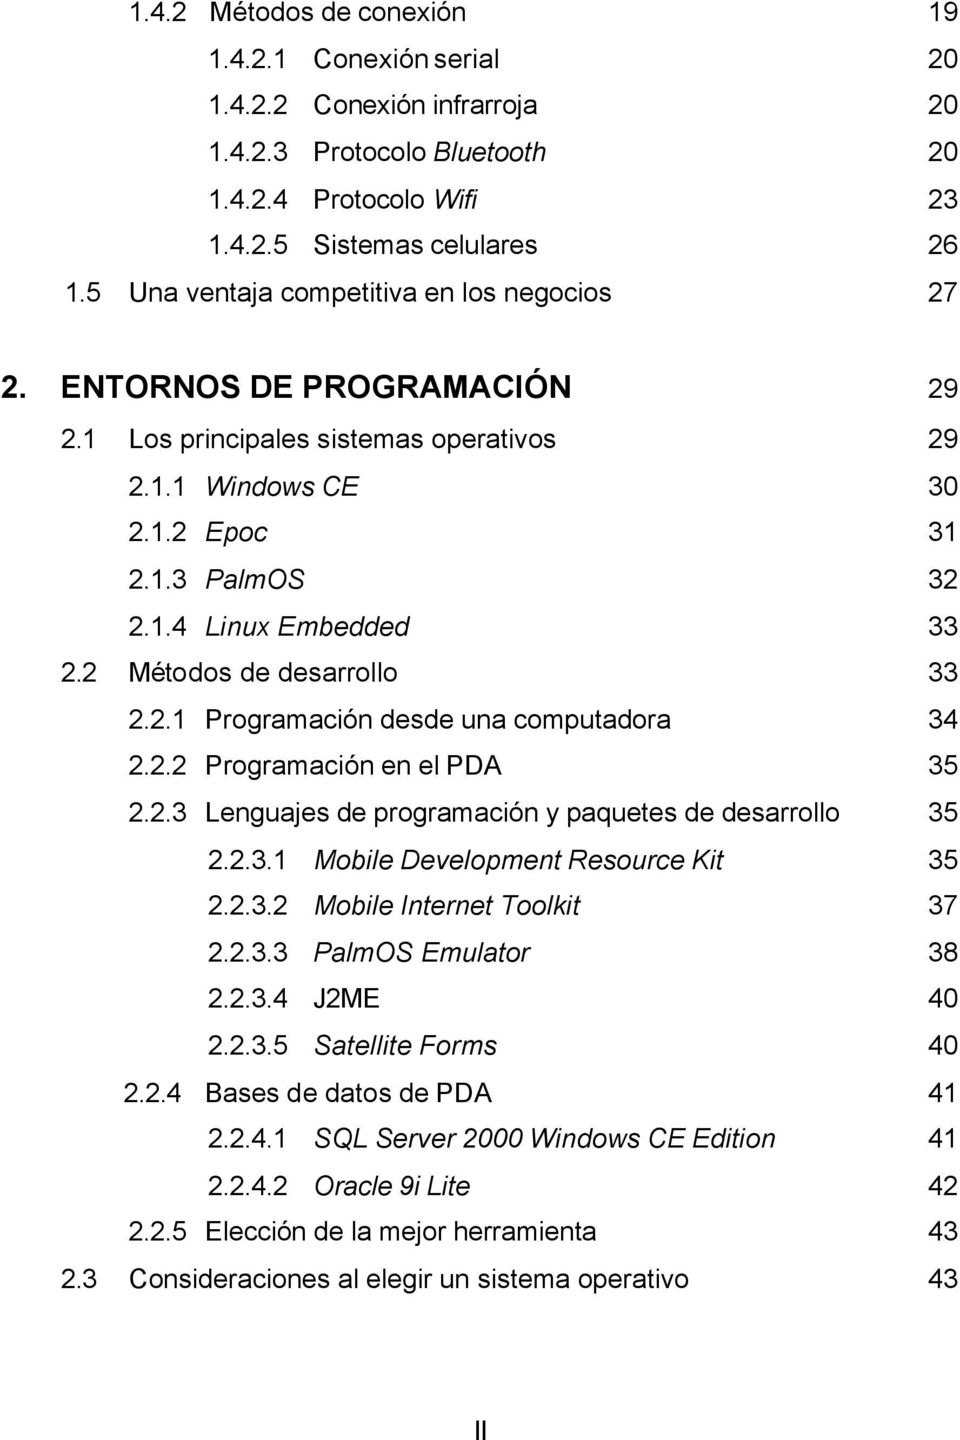 2 Métodos de desarrollo 33 2.2.1 Programación desde una computadora 34 2.2.2 Programación en el PDA 35 2.2.3 Lenguajes de programación y paquetes de desarrollo 35 2.2.3.1 Mobile Development Resource Kit 35 2.